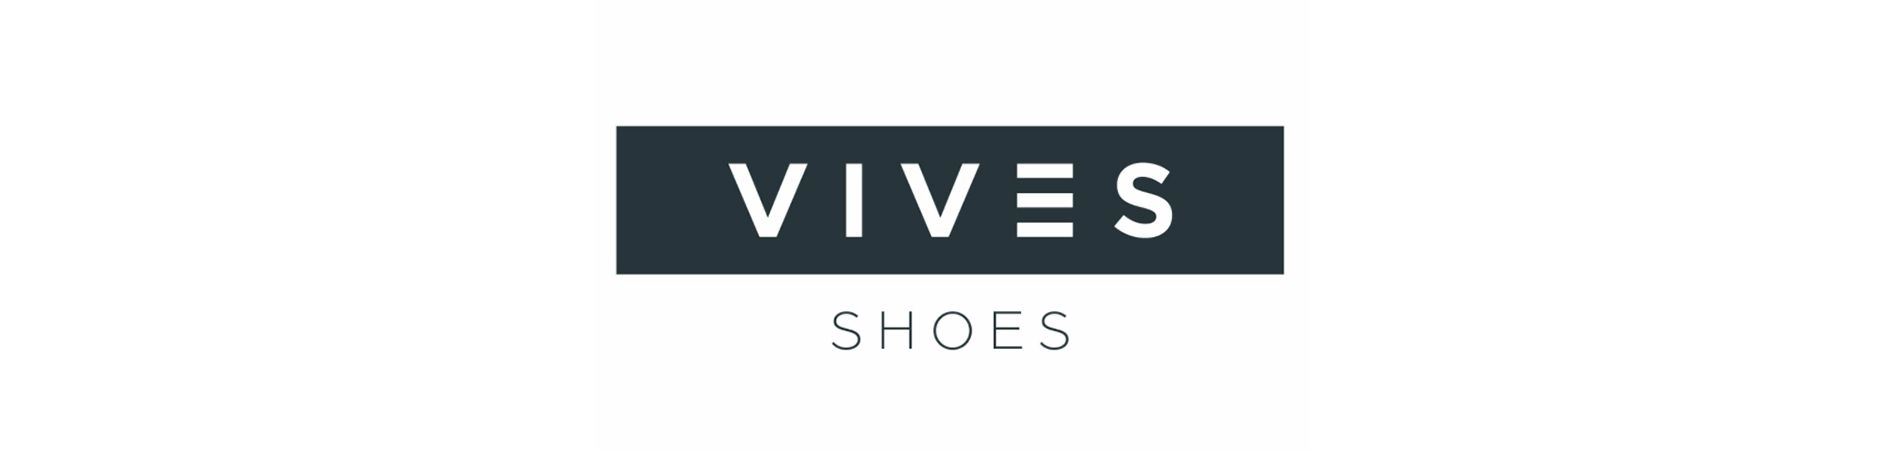 Vives Shoes nuevo cliente Consultoría SEO y SEM